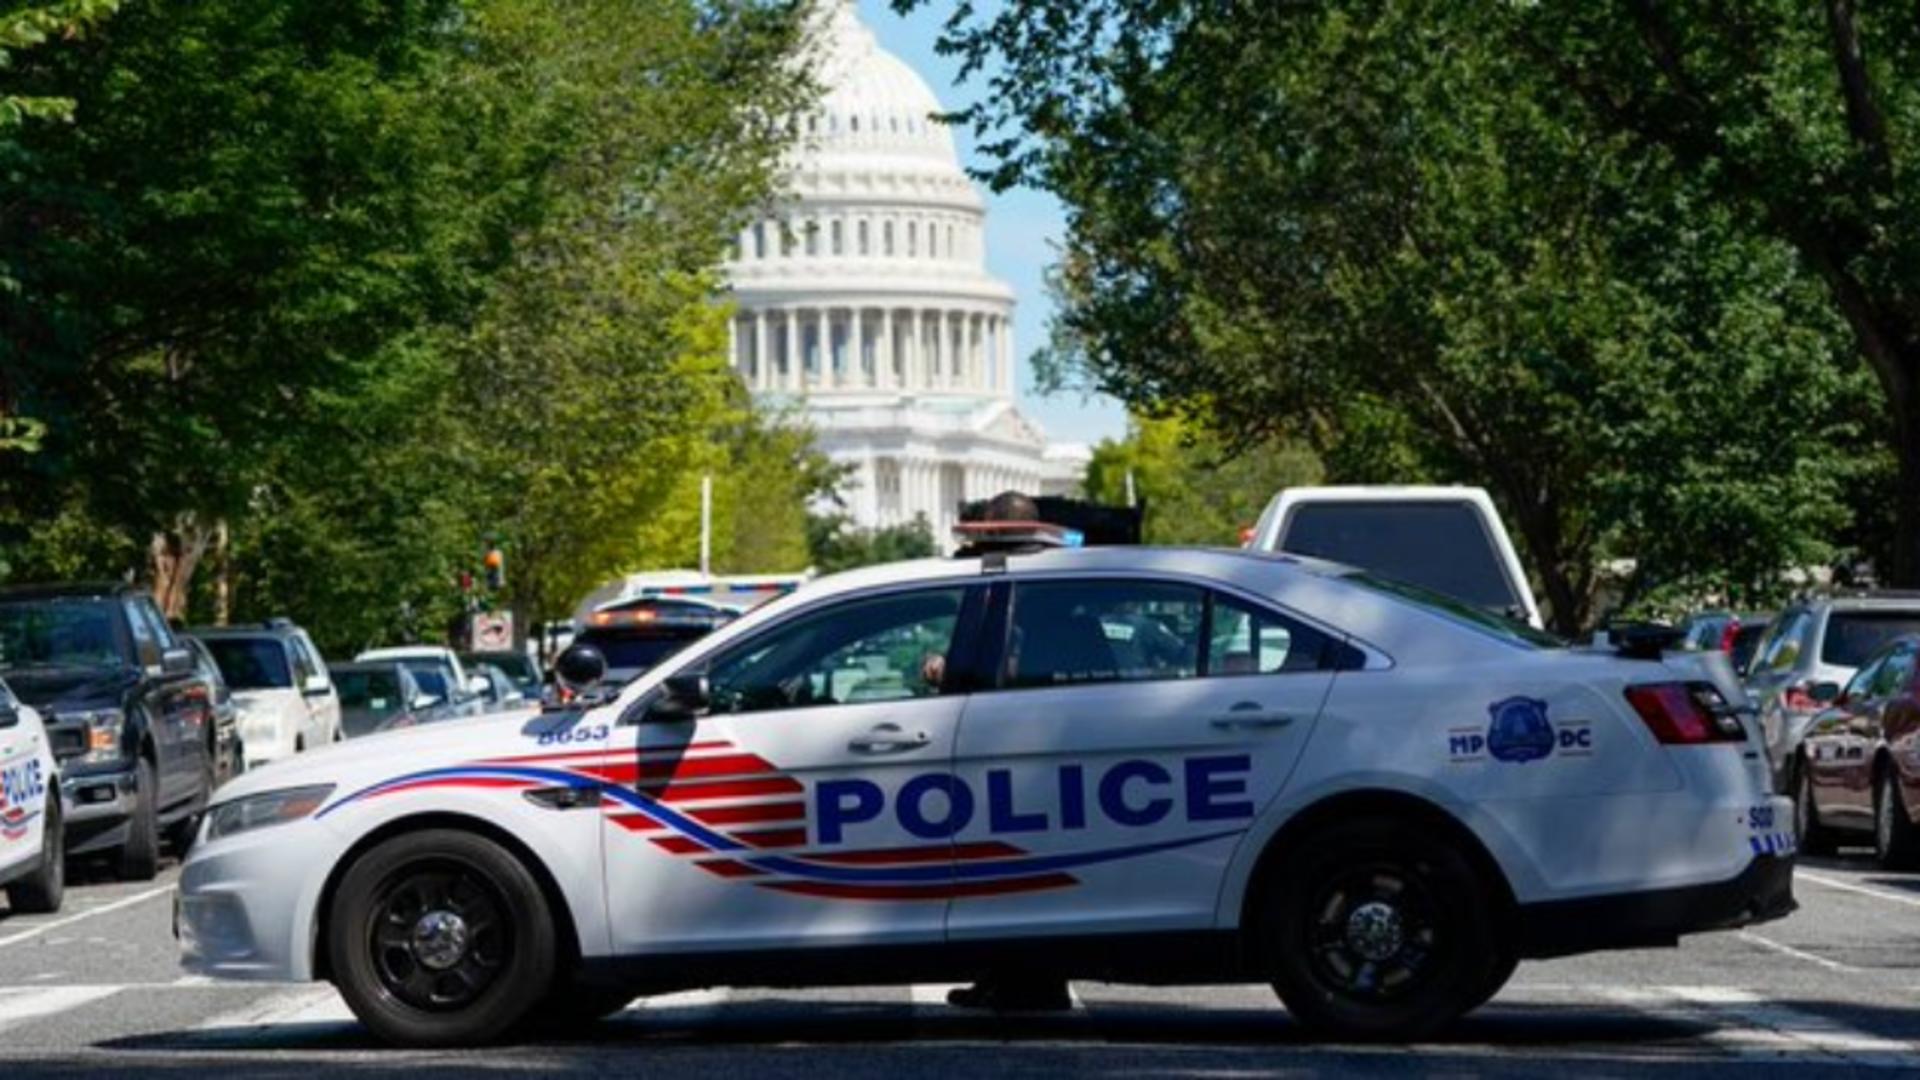 ALERTĂ de gradul ZERO la Washington! Posibilă amenințare cu bombă lângă Biblioteca Congresului SUA